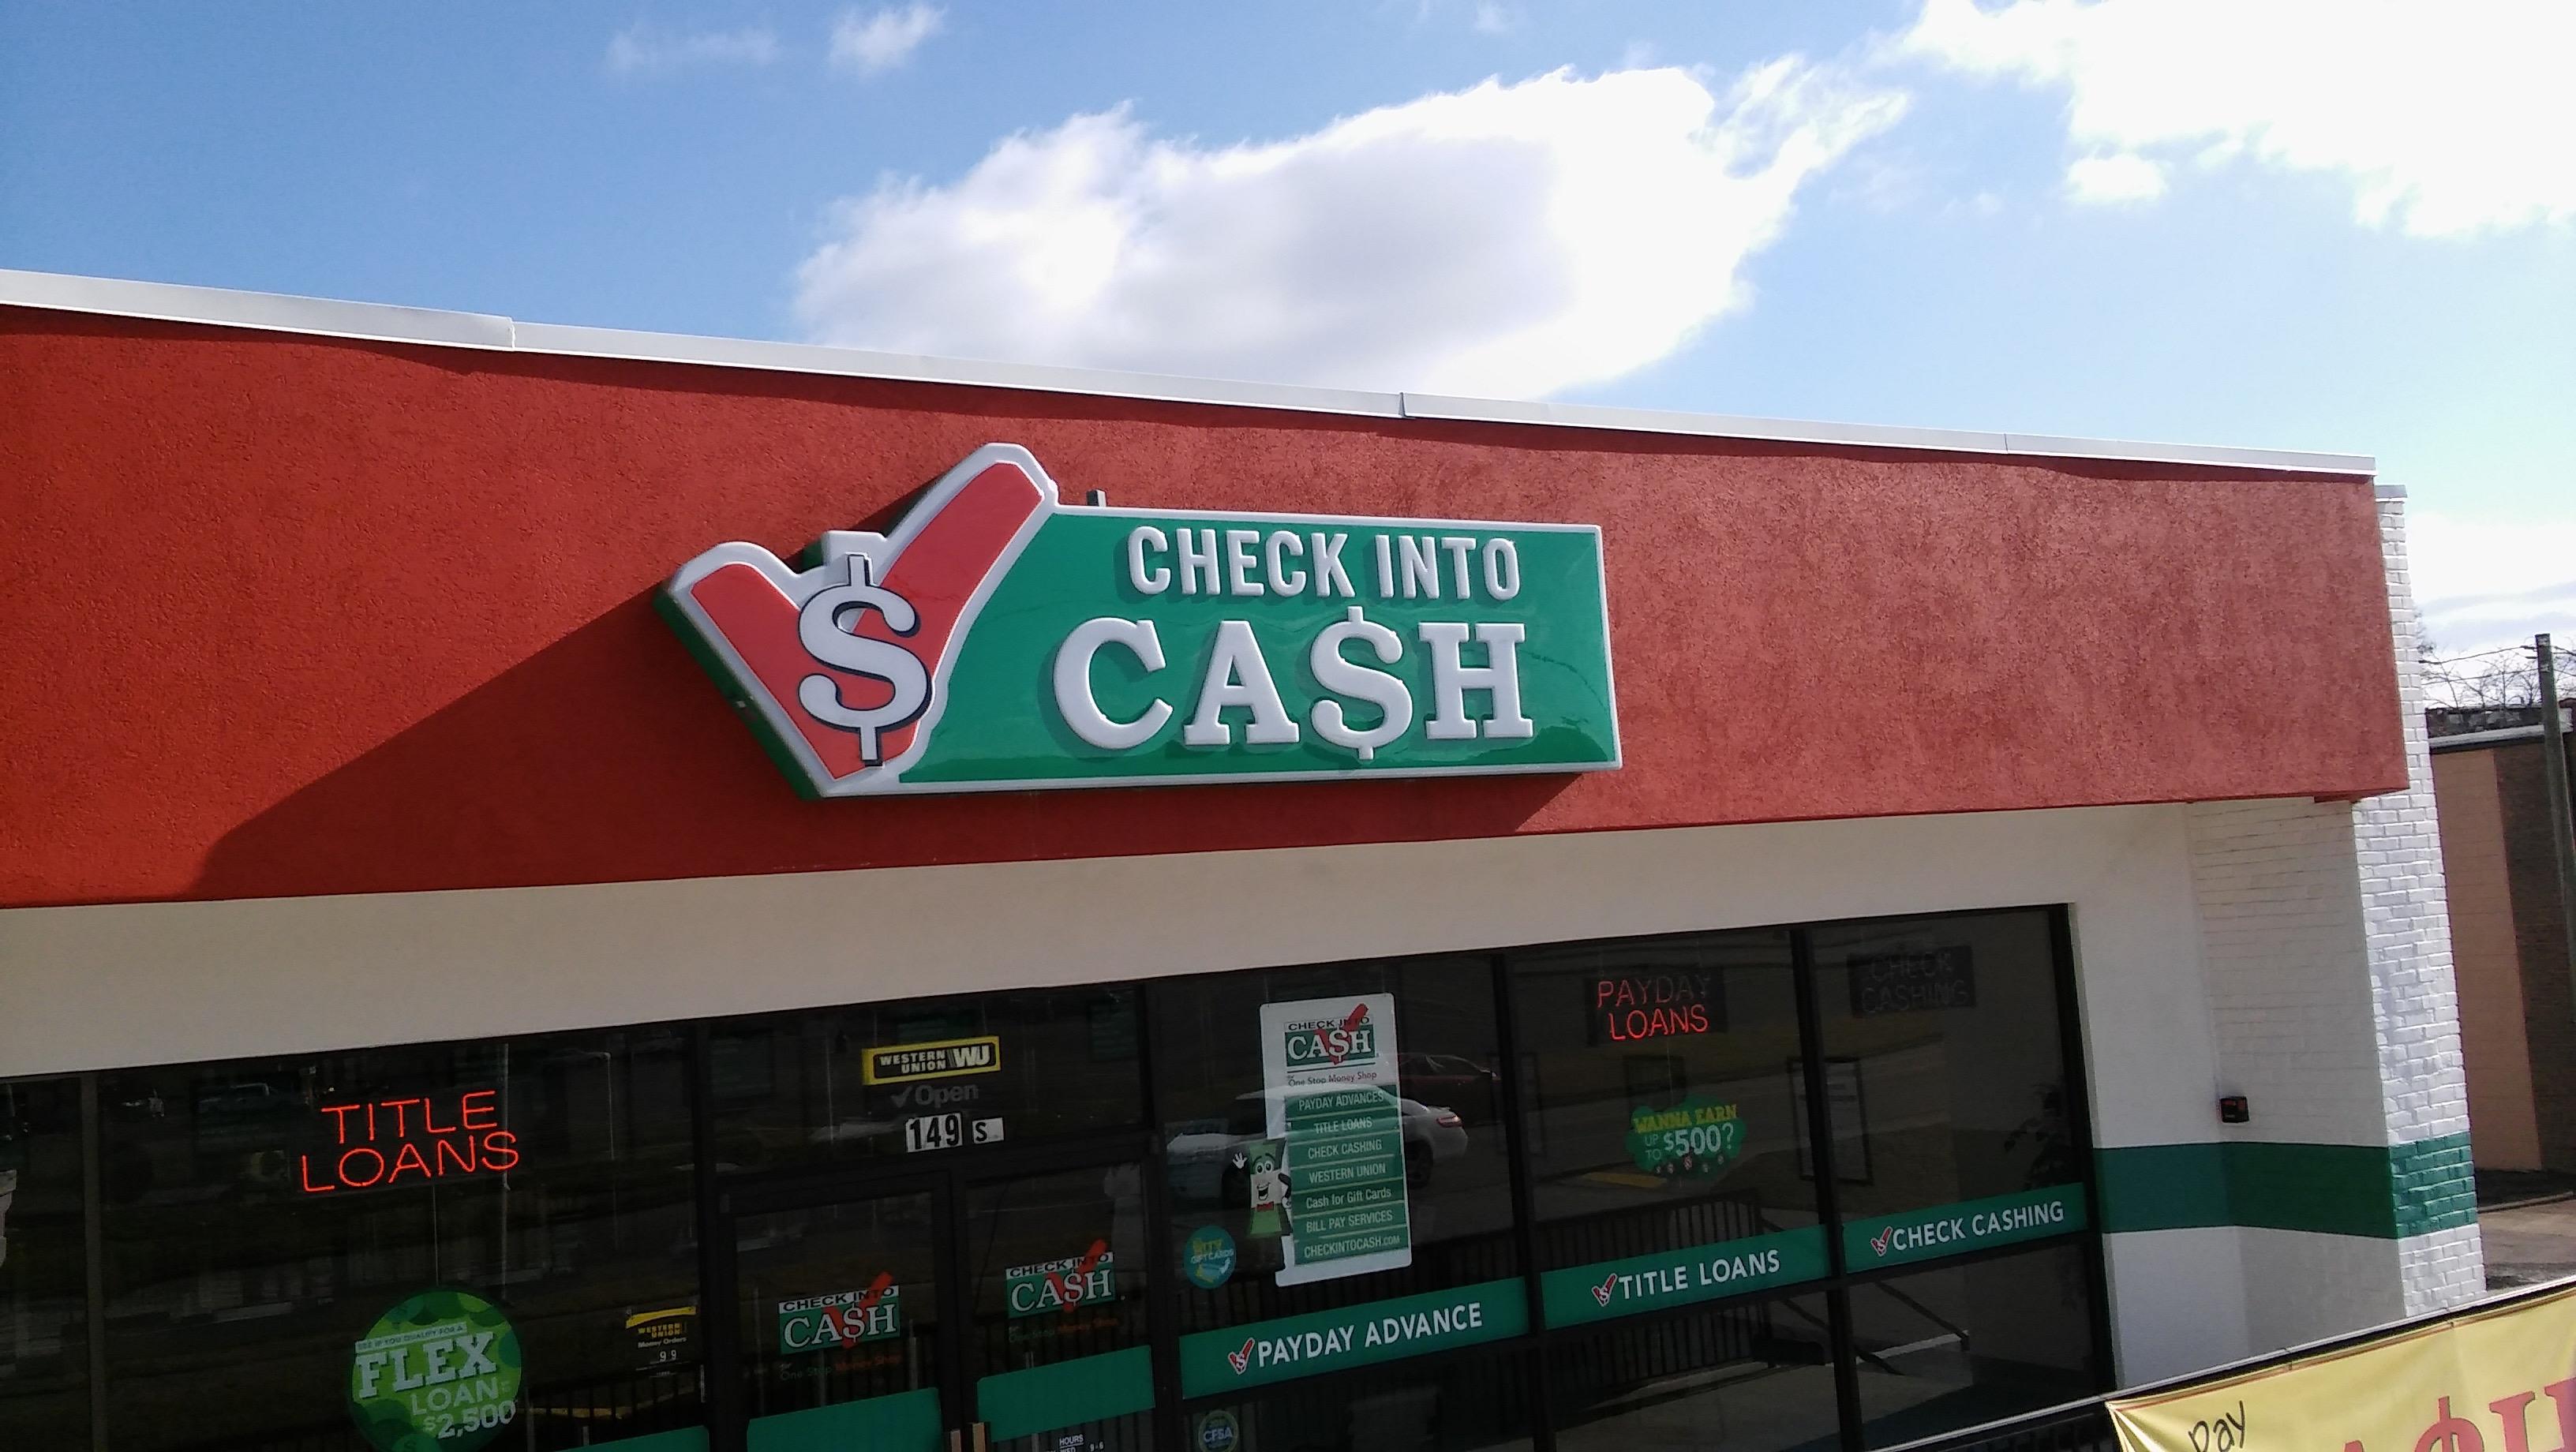 Check into Cash Logo - Check Into Cash 149 S Calderwood St, Alcoa, TN 37701 - YP.com